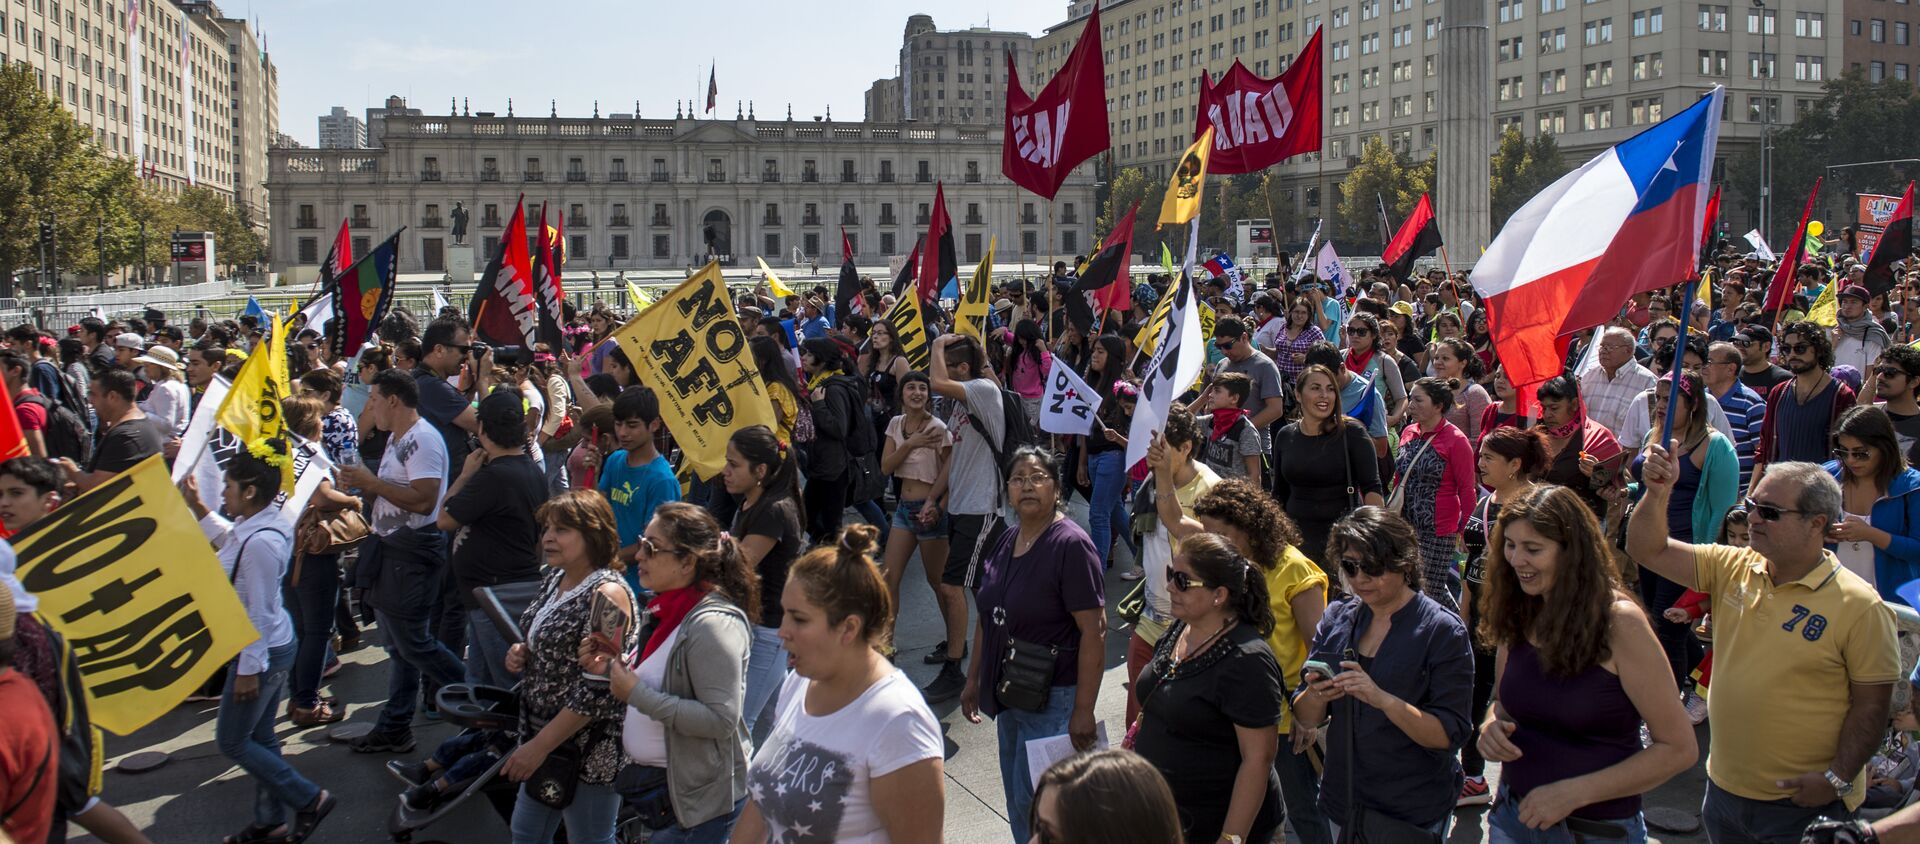 Manifestaciones de protesta contra el sistema de pensiones privado en Chile - Sputnik Mundo, 1920, 06.12.2019